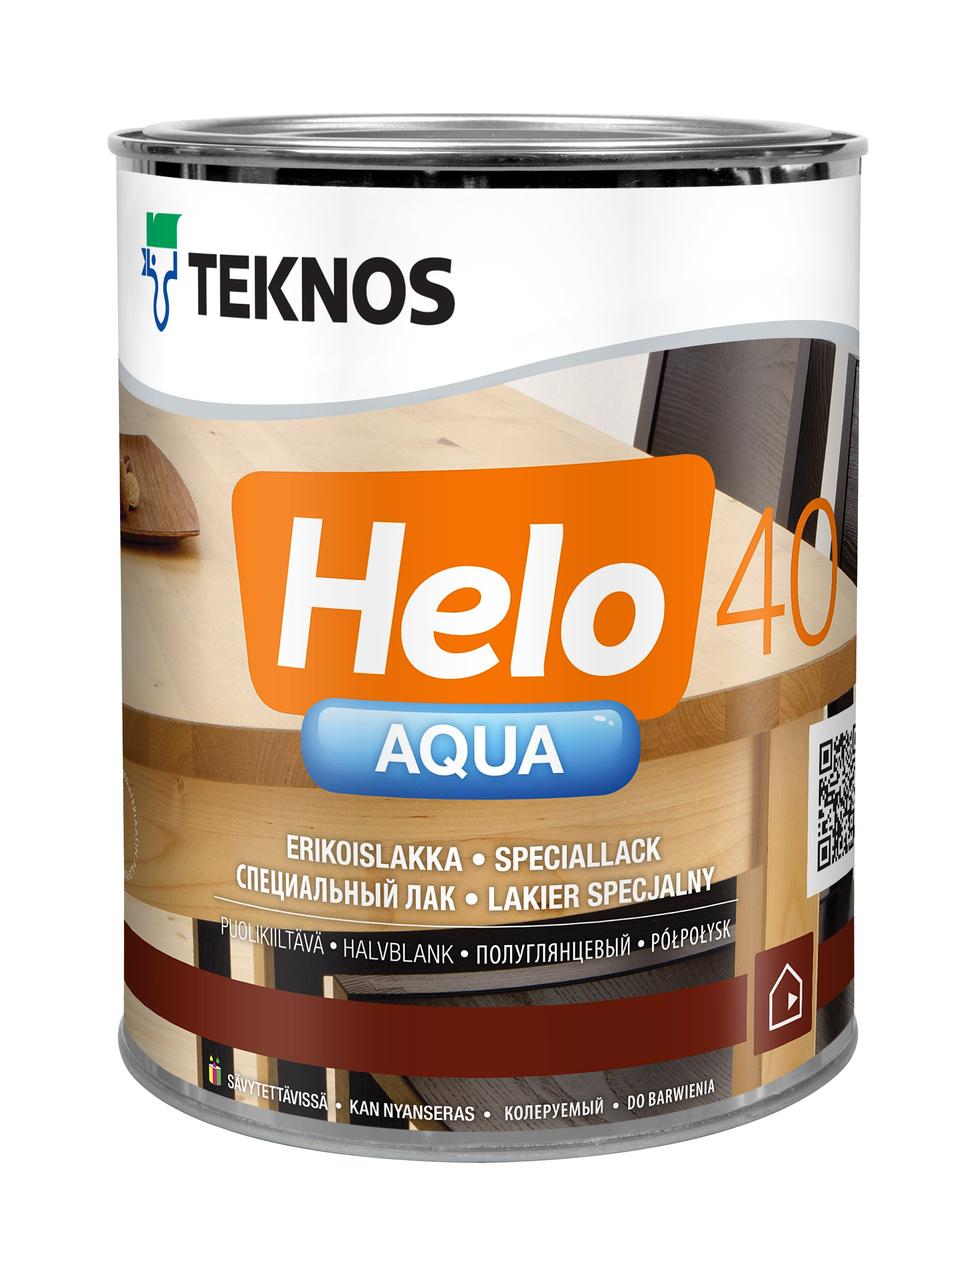 HELO AQUA 40 Semigloss Полуглянцевый водоразбавляемый специальный лак, 2,7л